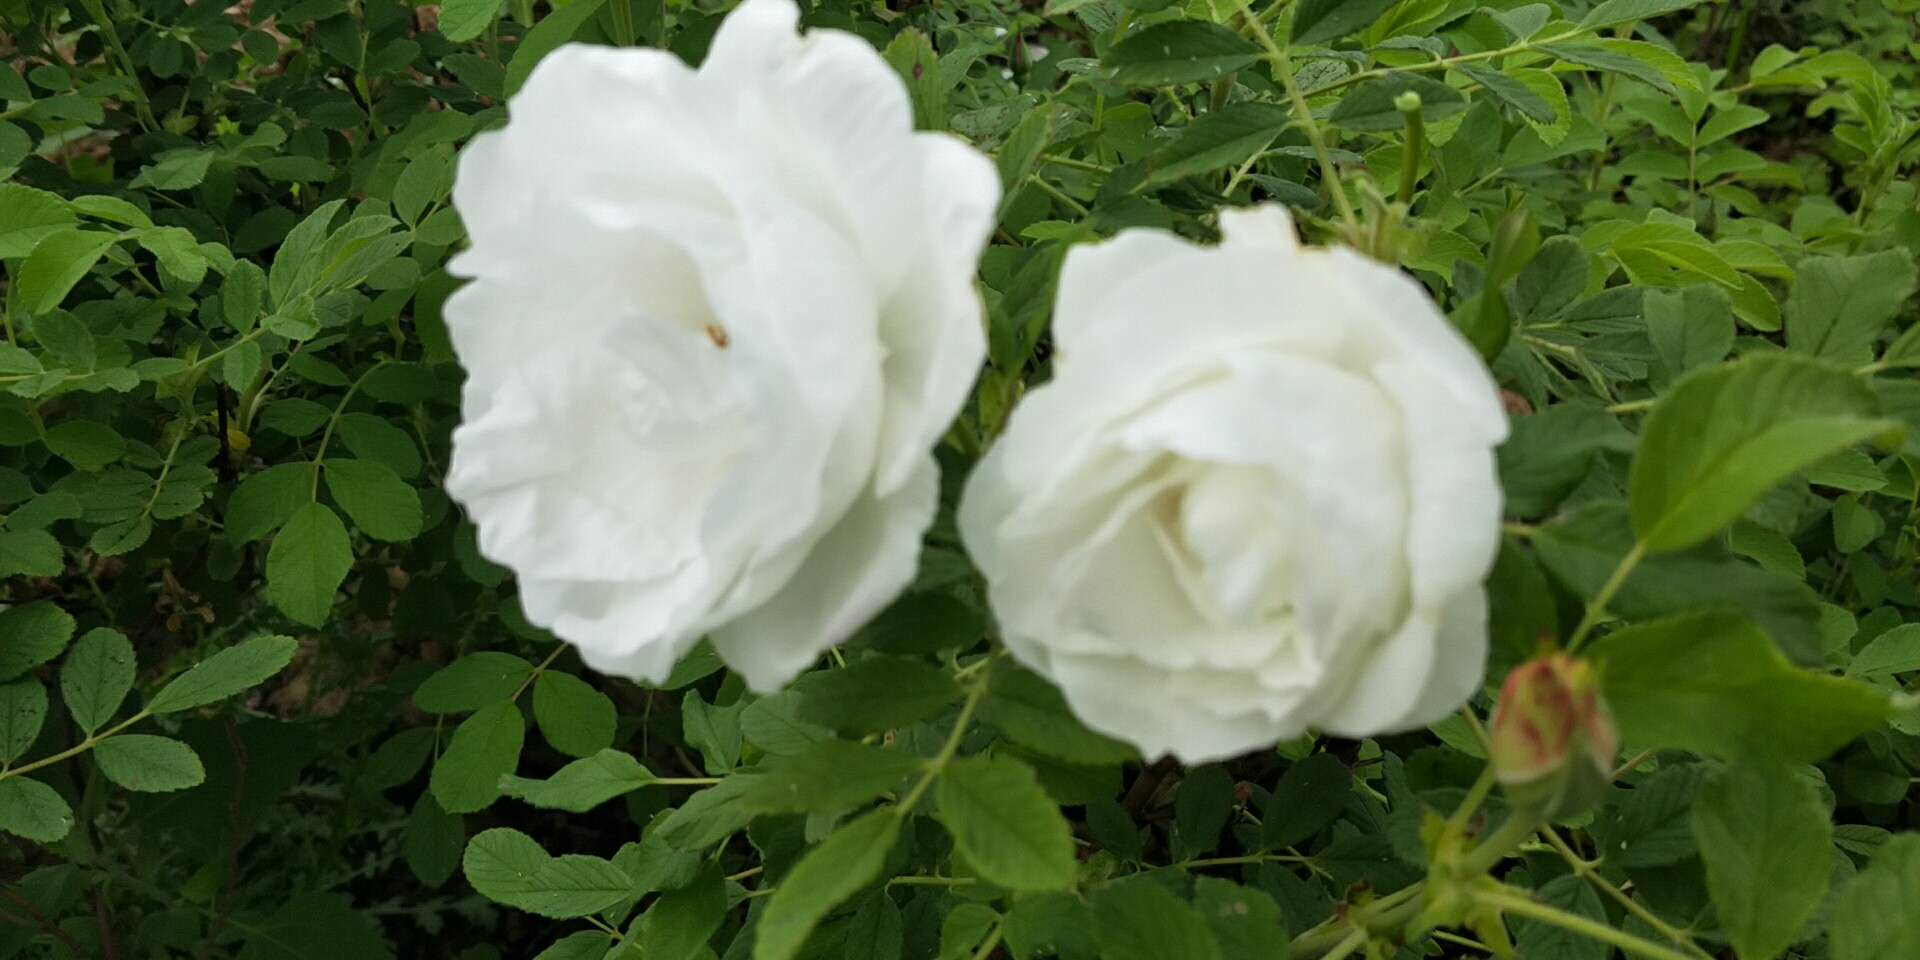 白玫瑰小苗白色玫瑰苗种植基地 大量种植供应玫瑰花幼苗 白色重瓣玫瑰苗  白玫瑰小苗